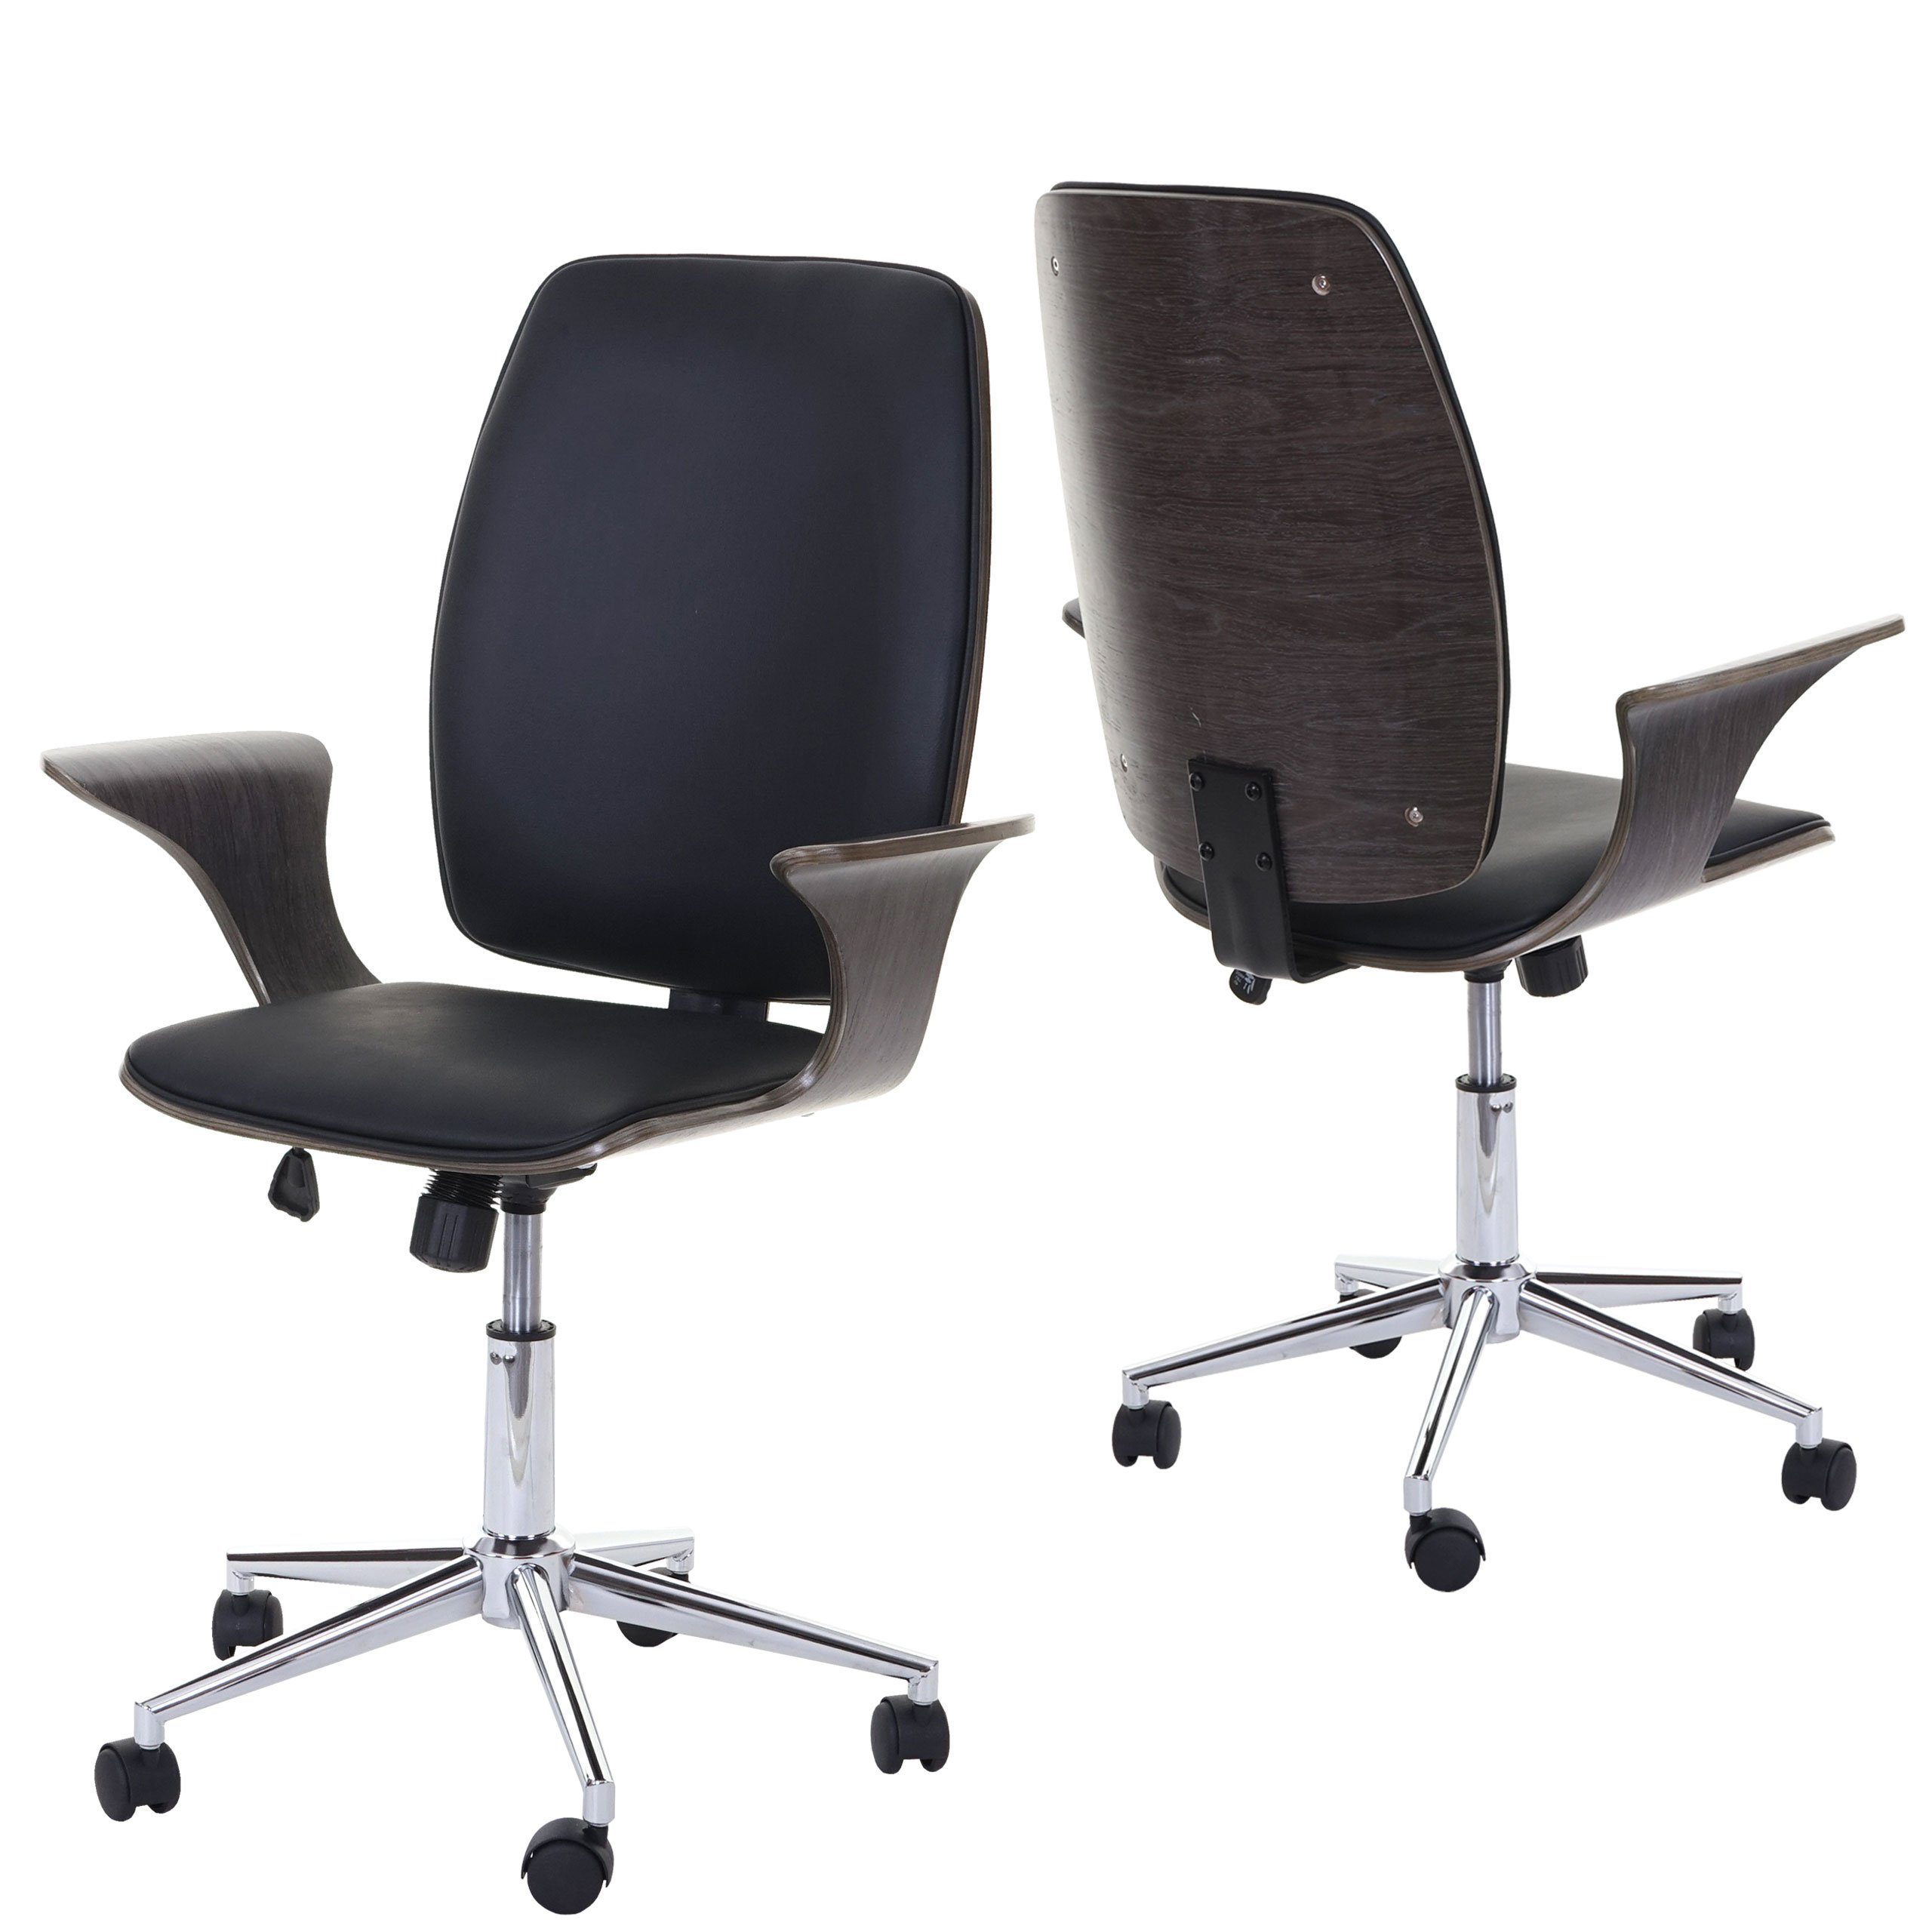 MCW Schreibtischstuhl MCW-C54, Wipptechnik, Sitzschale einstellbar, grau,schwarz mit Härtegrad Armlehnen